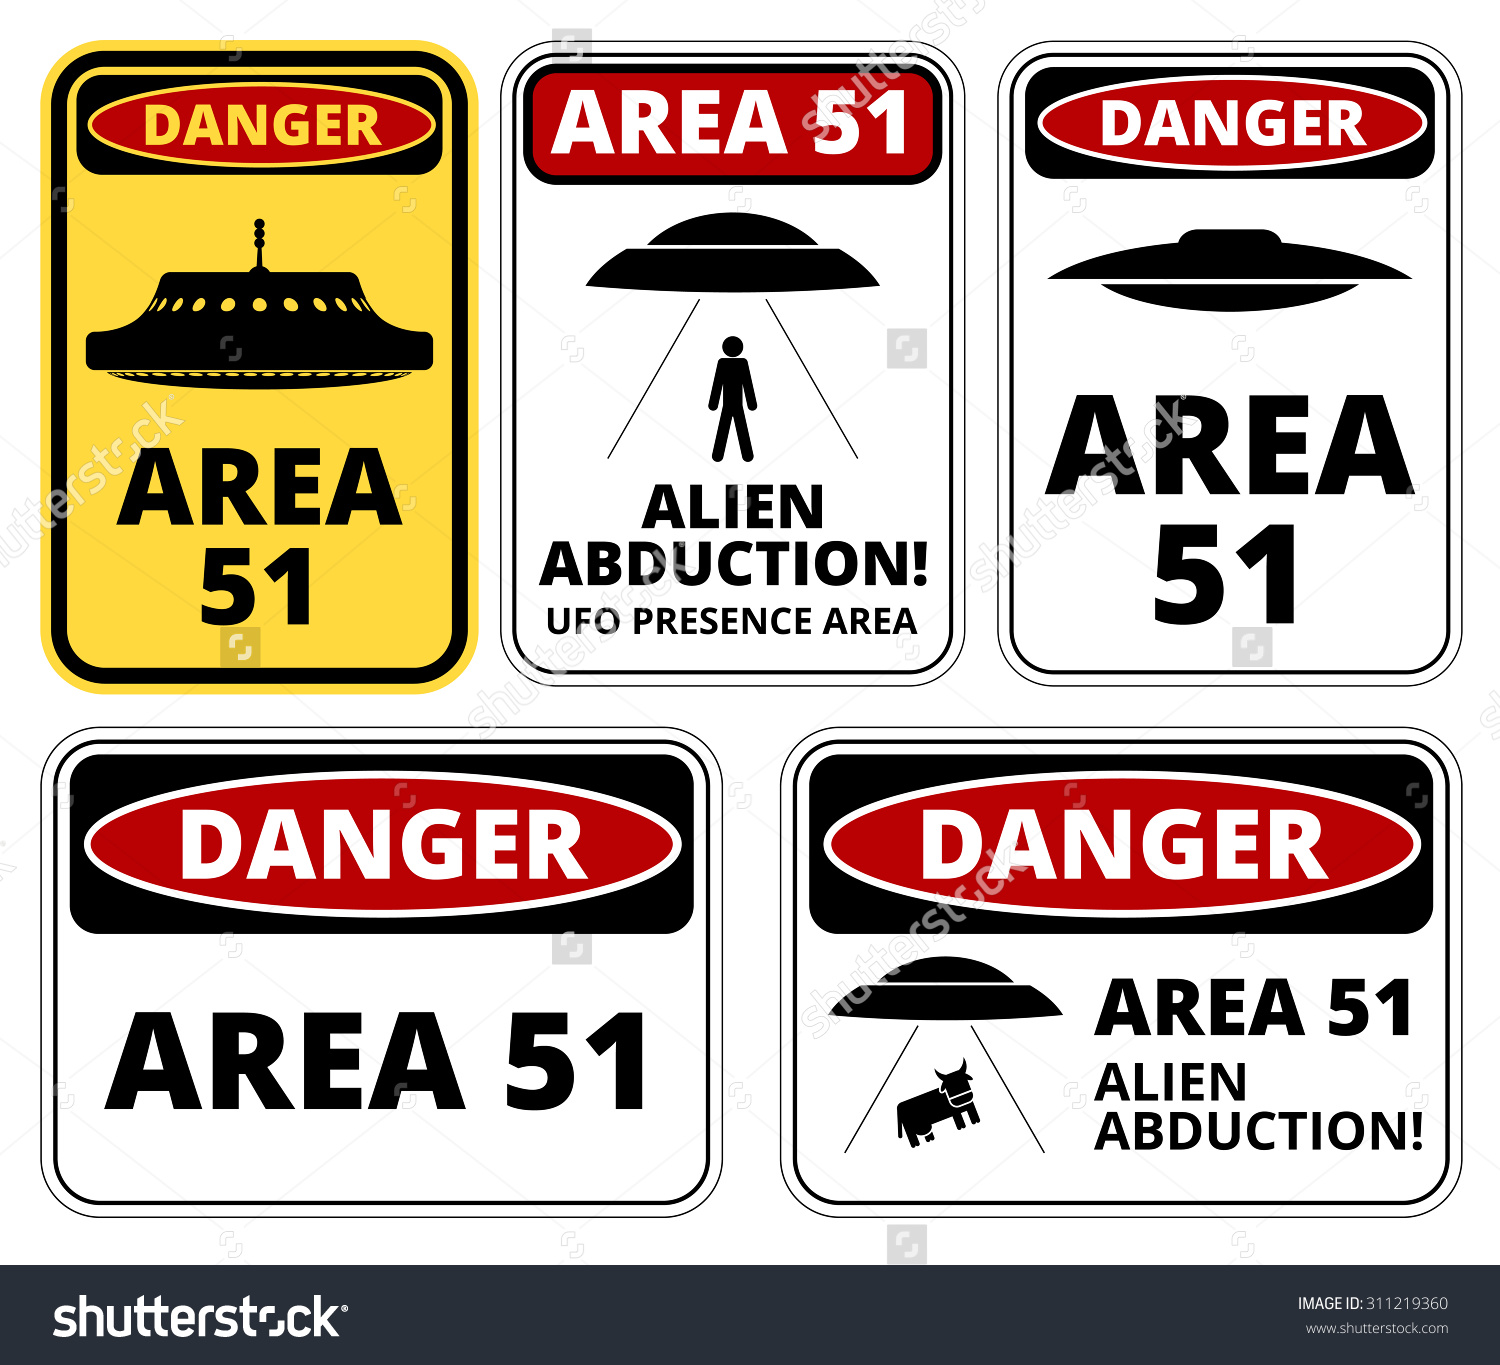 Area 51 #21